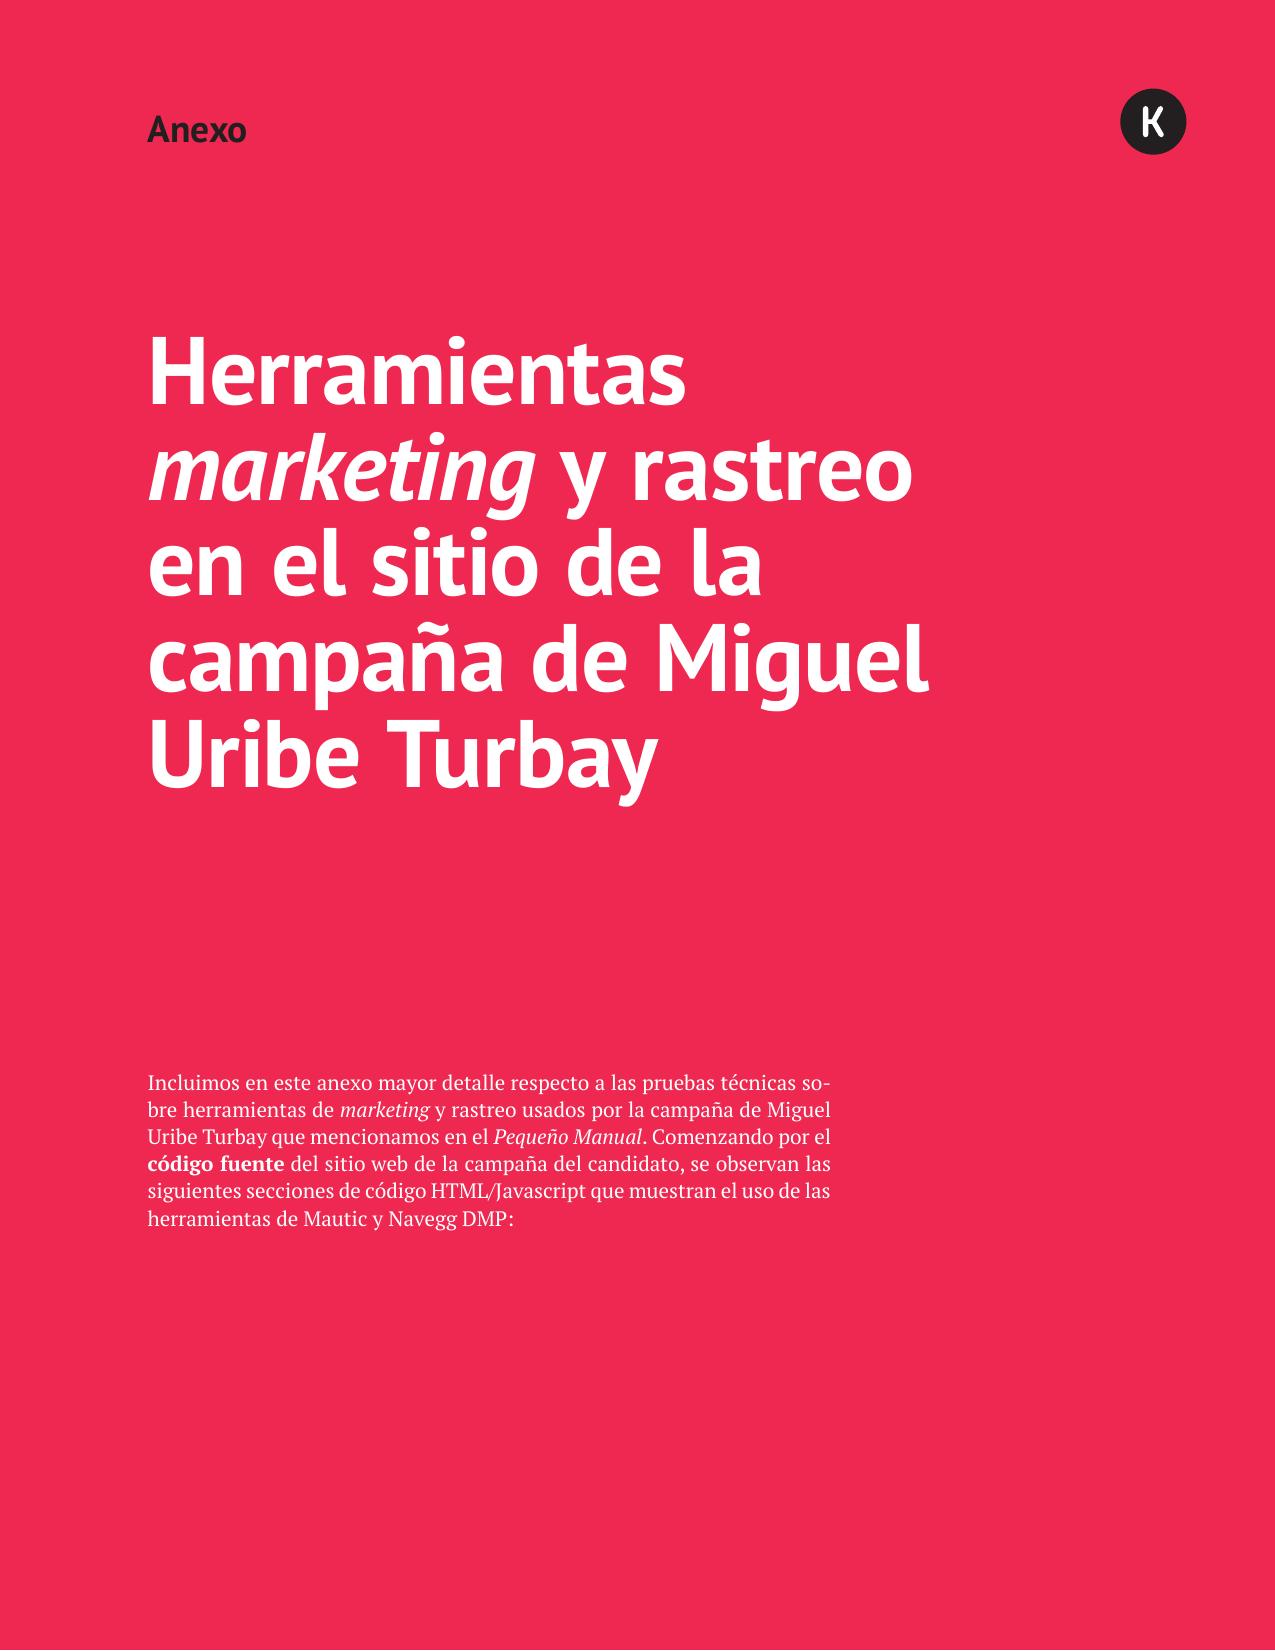 Anexo 06 - Herramientas Marketing y rastreo en el sitio de la campaña de Miguel Uribe Turbay